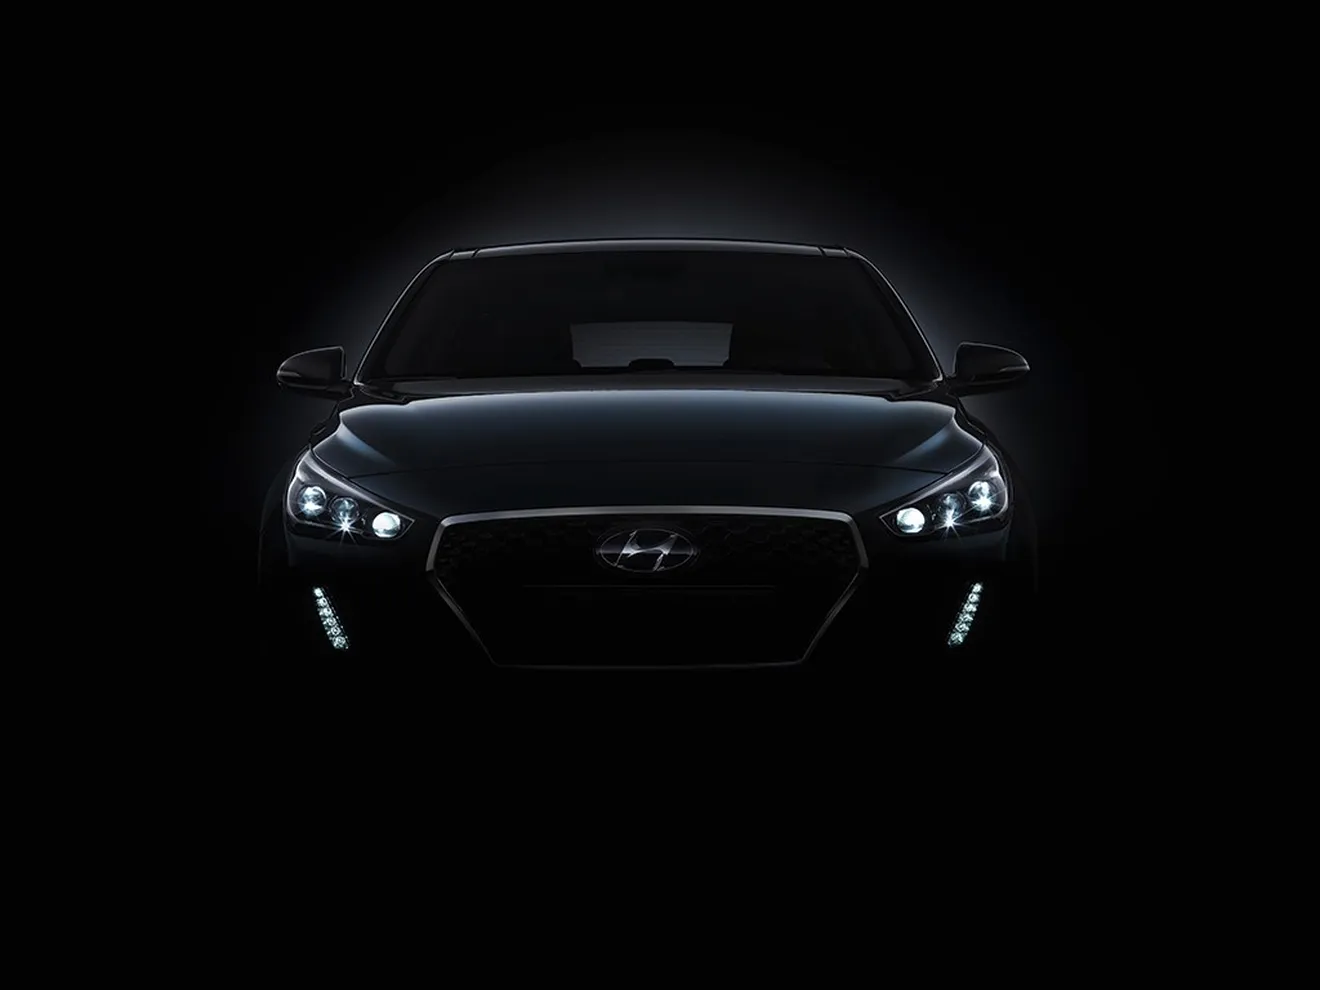 Primeras imágenes y detalles oficiales del Hyundai i30 2017, la nueva generación